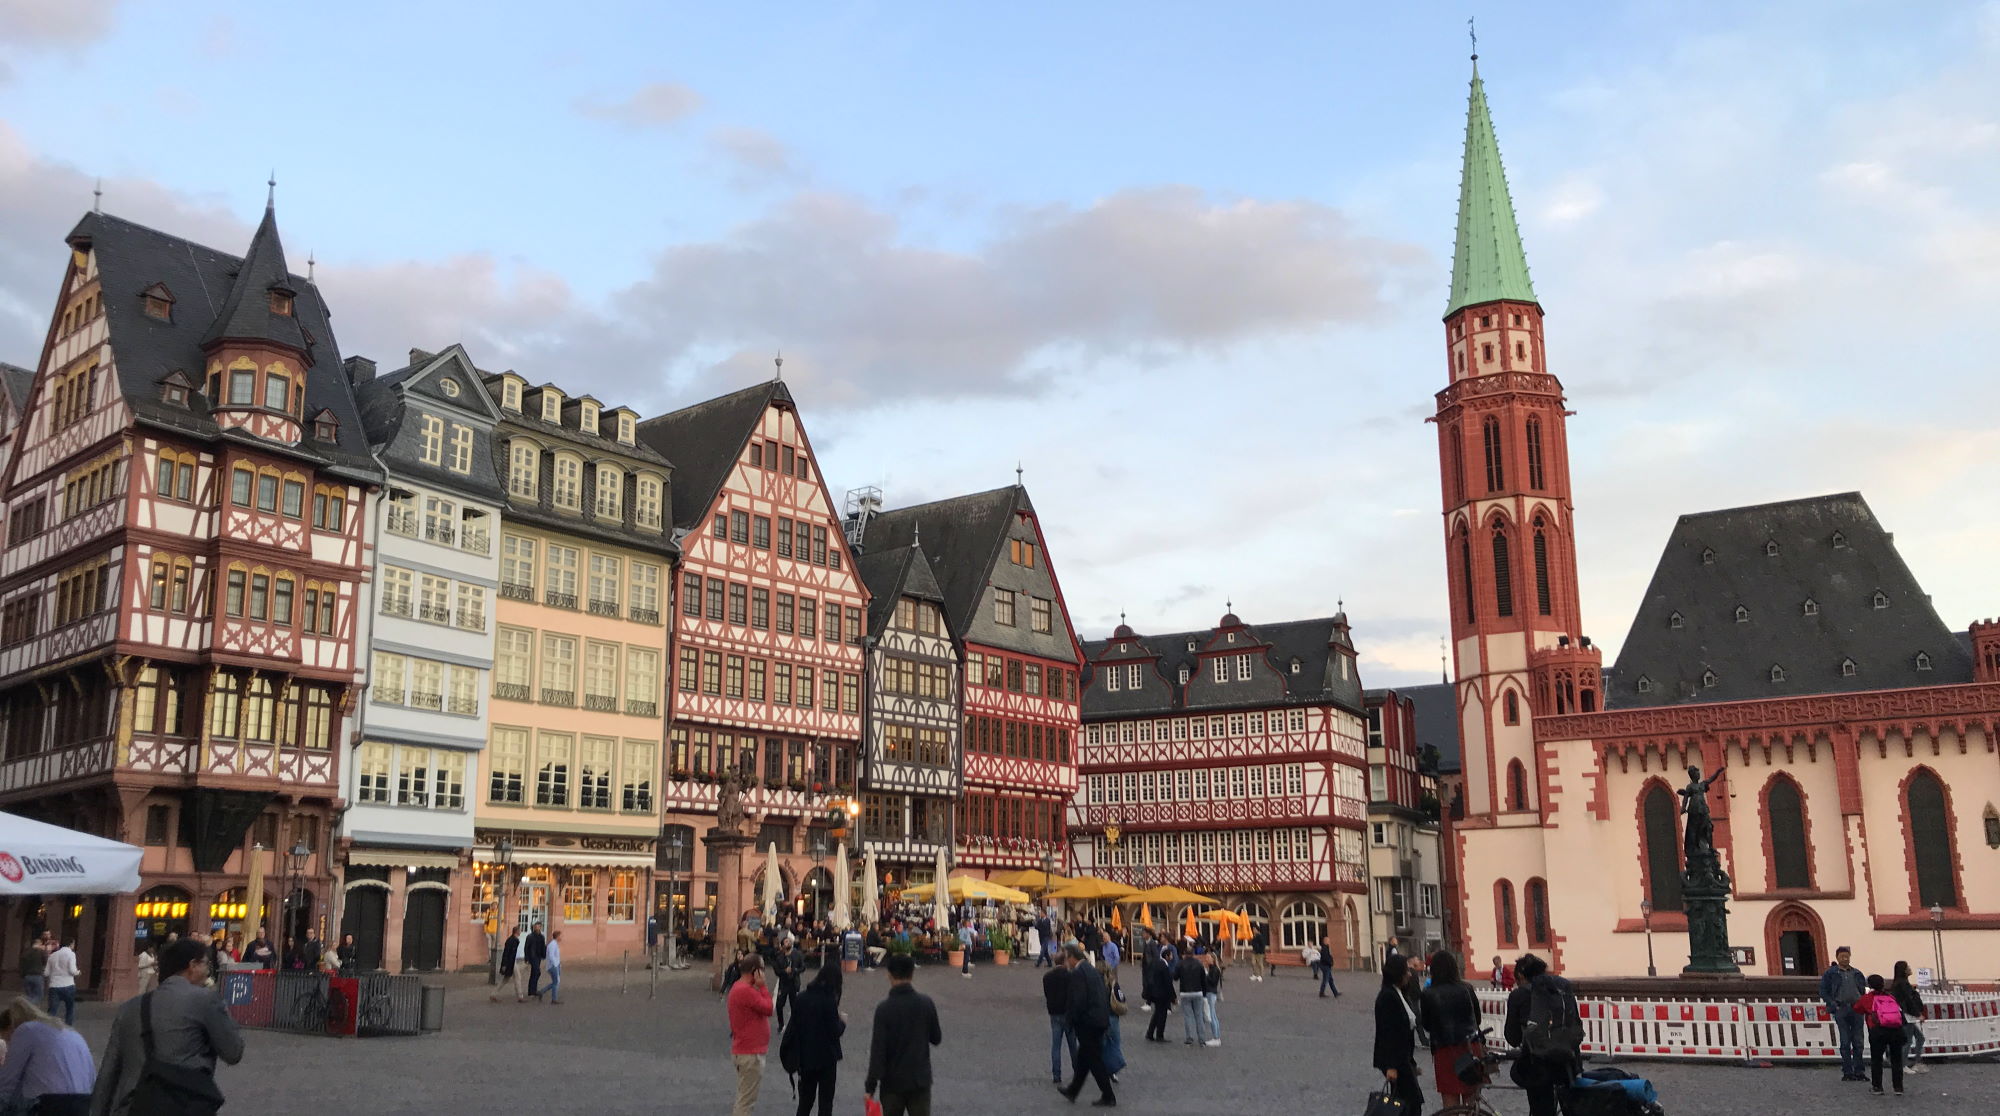 Frankfurt's Altstadt